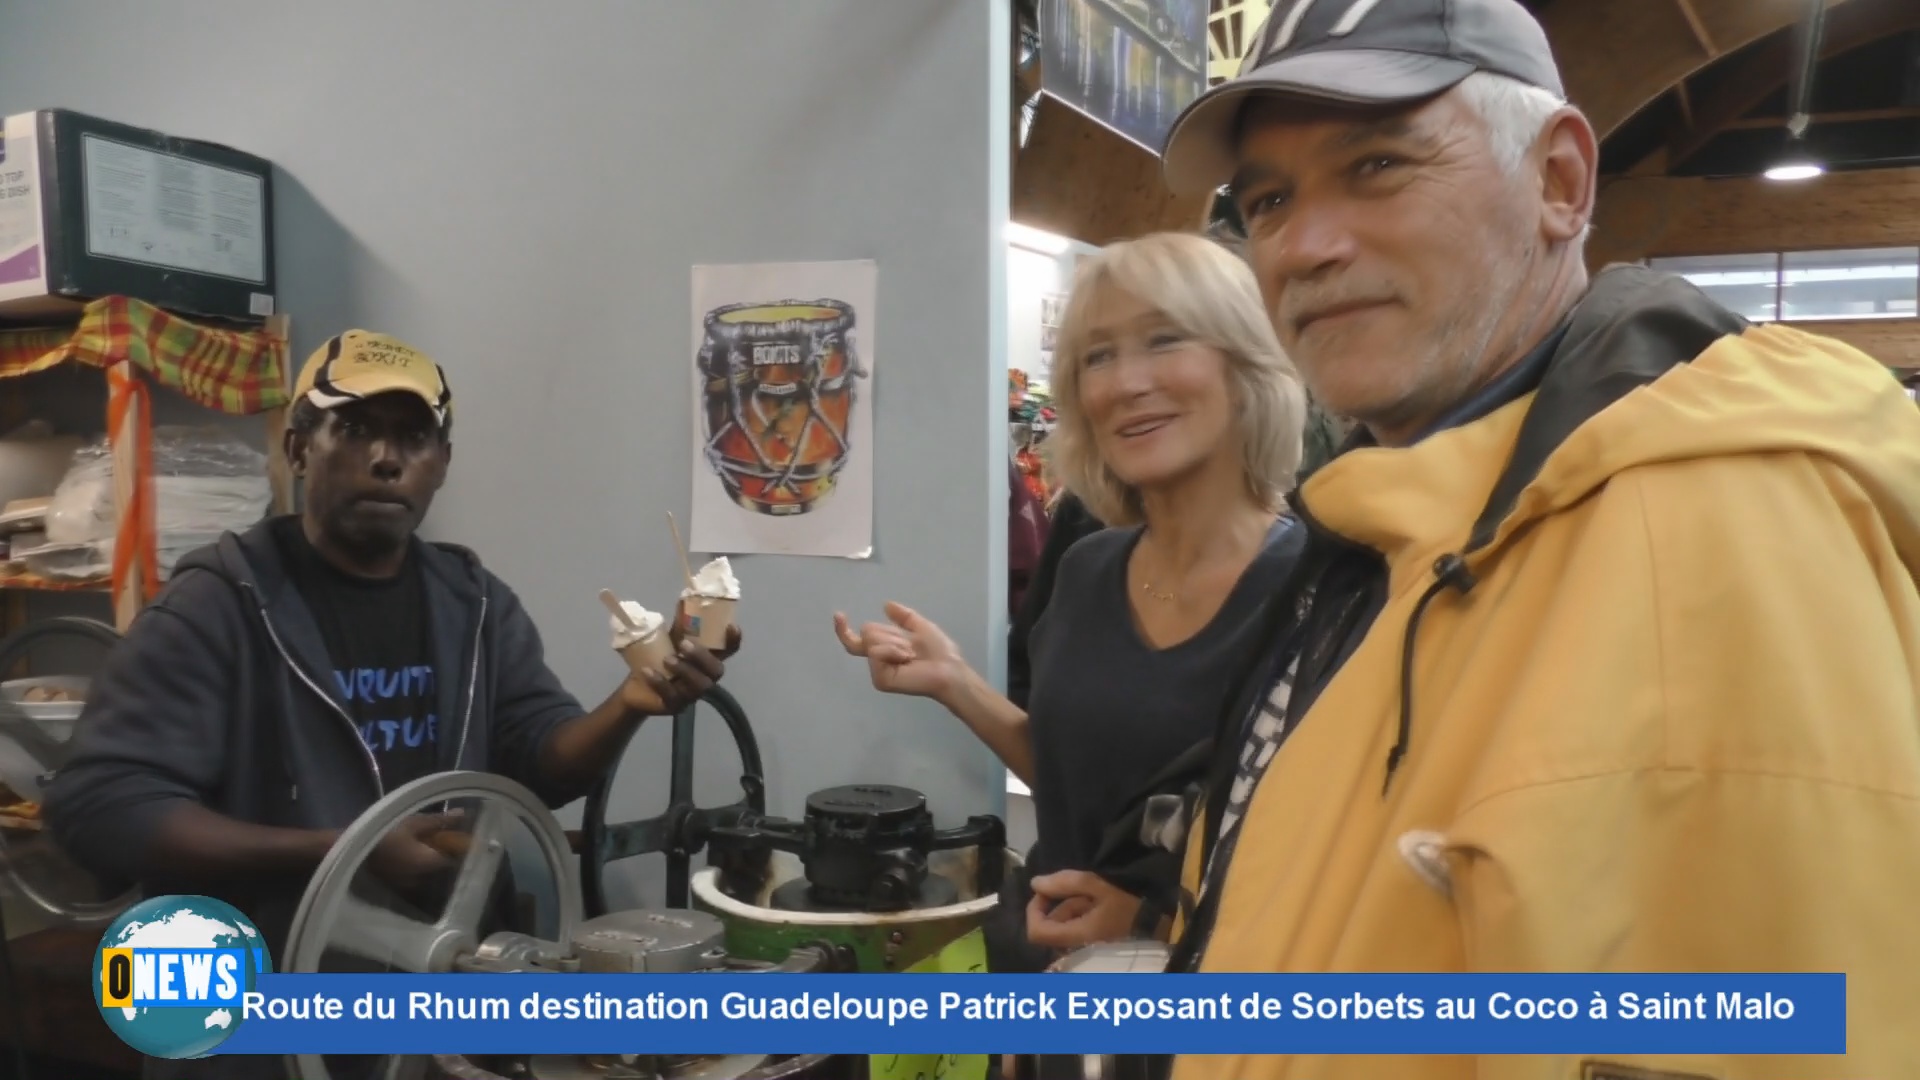 [Vidéo] Route du Rhum destination Guadeloupe. Patrick exposant et vendeur de sorbets au coco